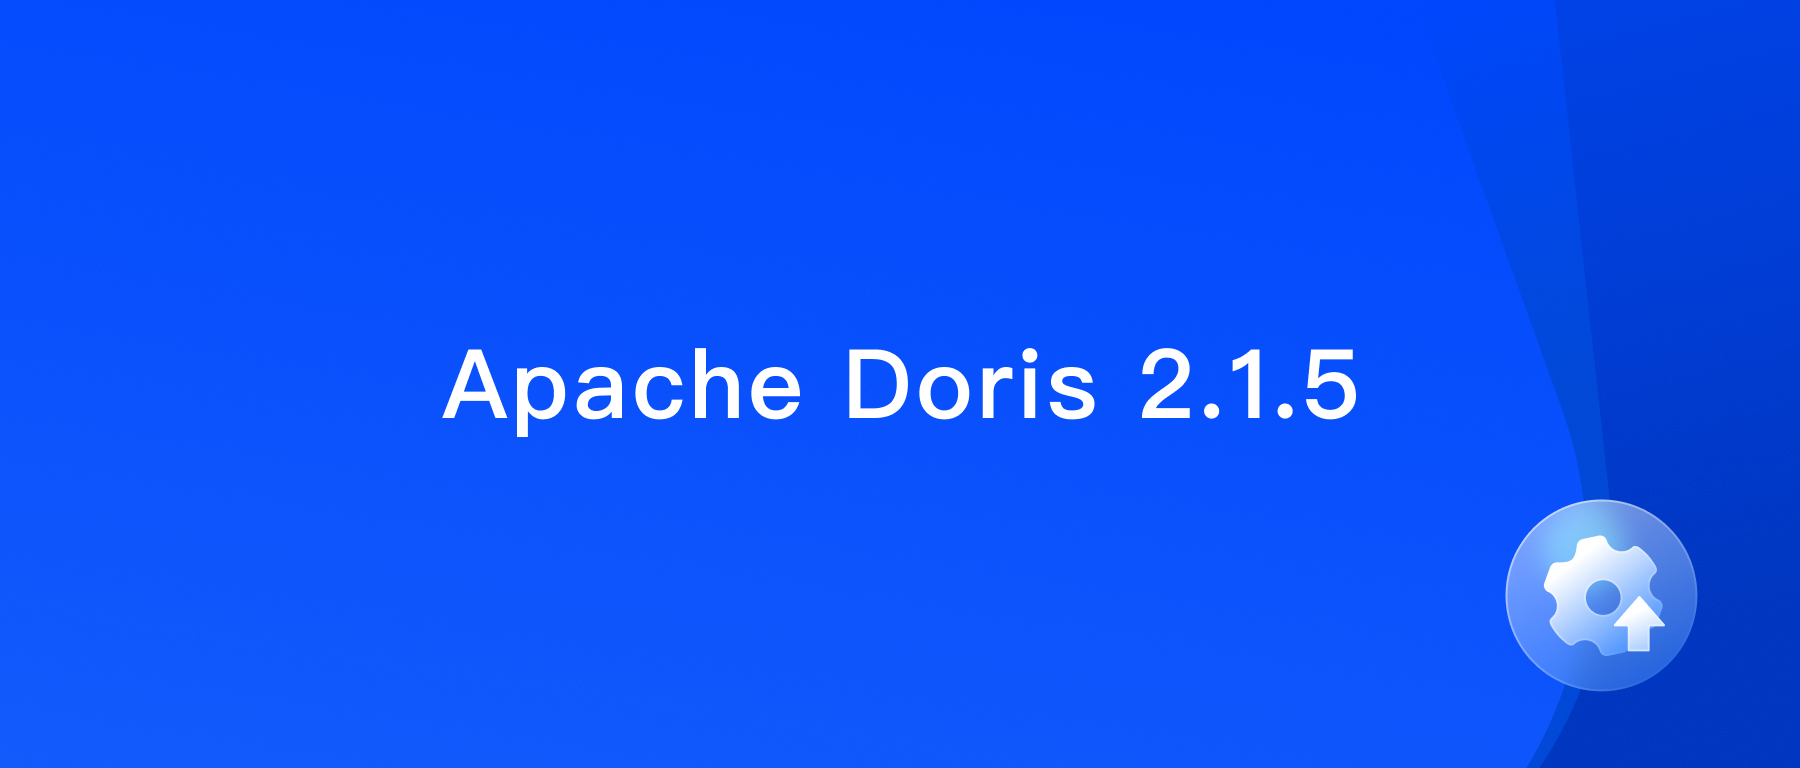 Apache Doris version 2.1.5 has been released